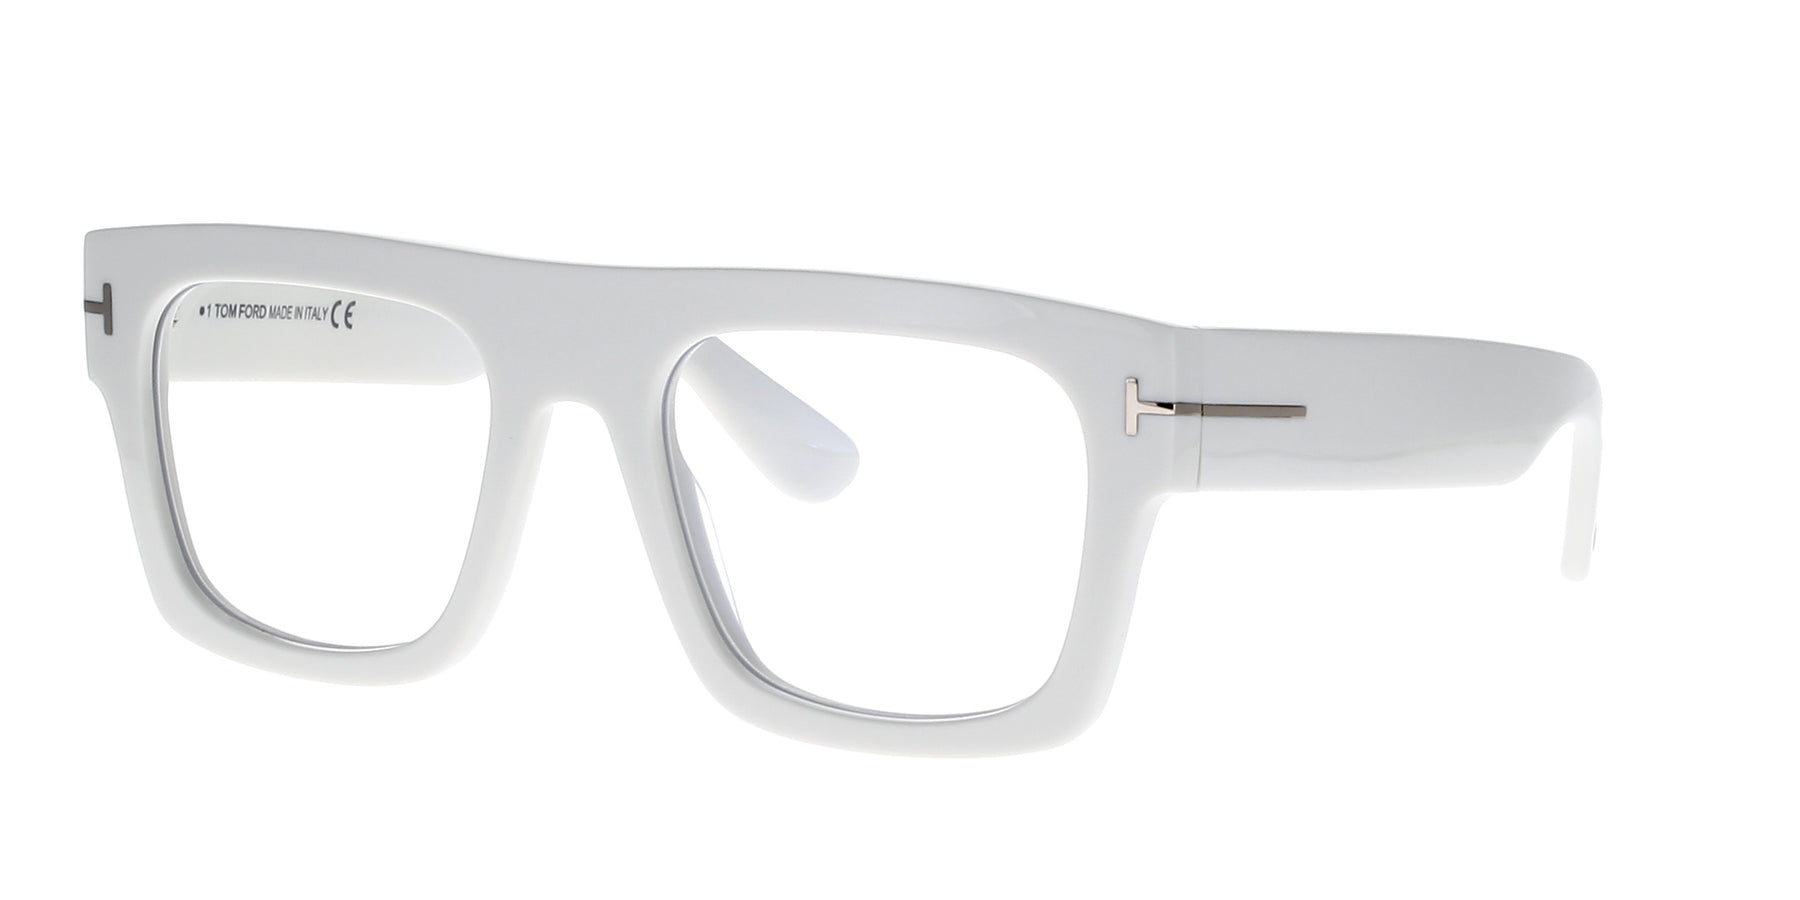 Tom Ford TF5634-B Square Acetate Glasses | Fashion Eyewear US